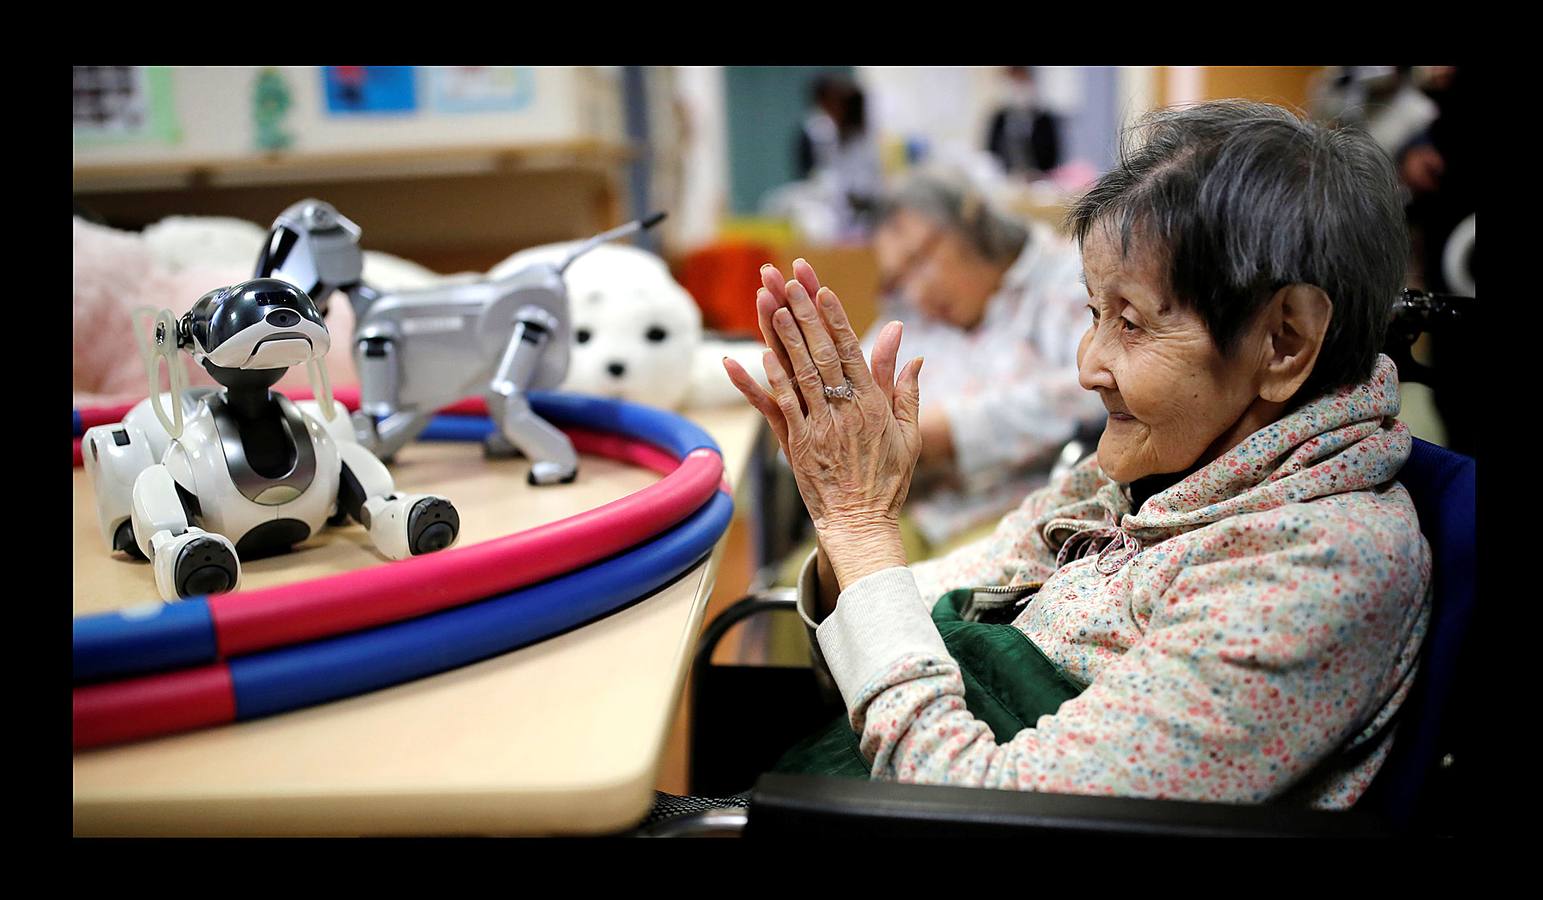 Los robots ayudan en el funcionamiento del asilo Shin-tomi de Tokio que utiliza 20 modelos diferentes para cuidar a sus residentes. El gobierno japonés espera que la experiencia sirva como modelo para atender el creciente número de ancianos y la escasez de cuidadores.